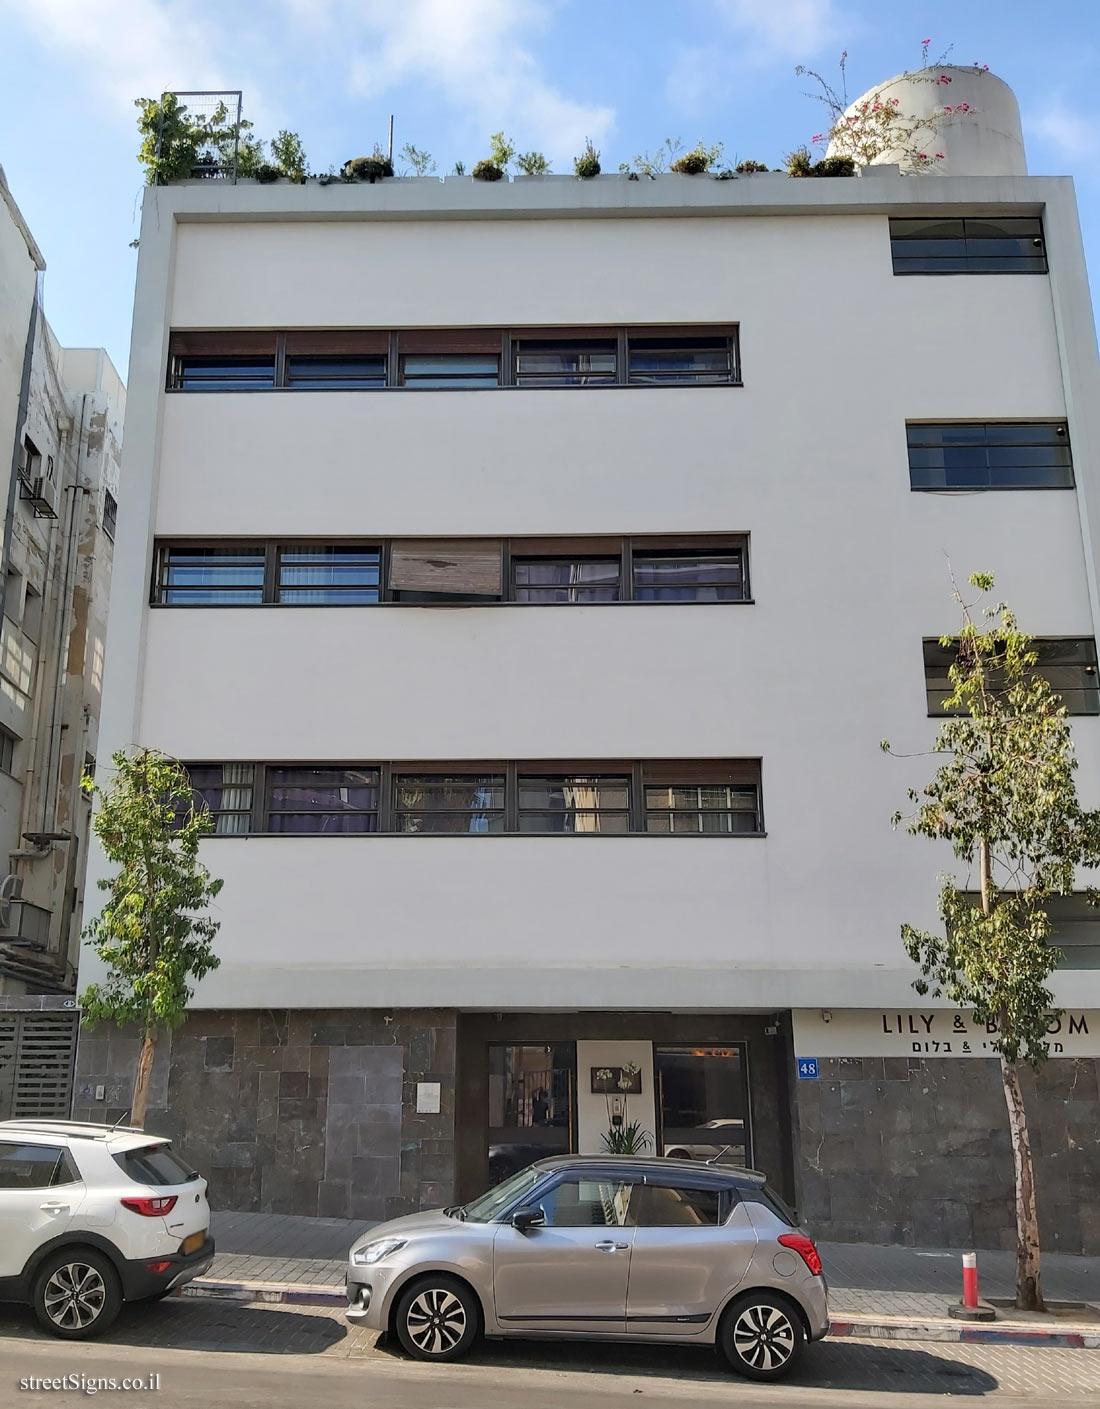 Tel Aviv - buildings for conservation - 48 Lilienblum